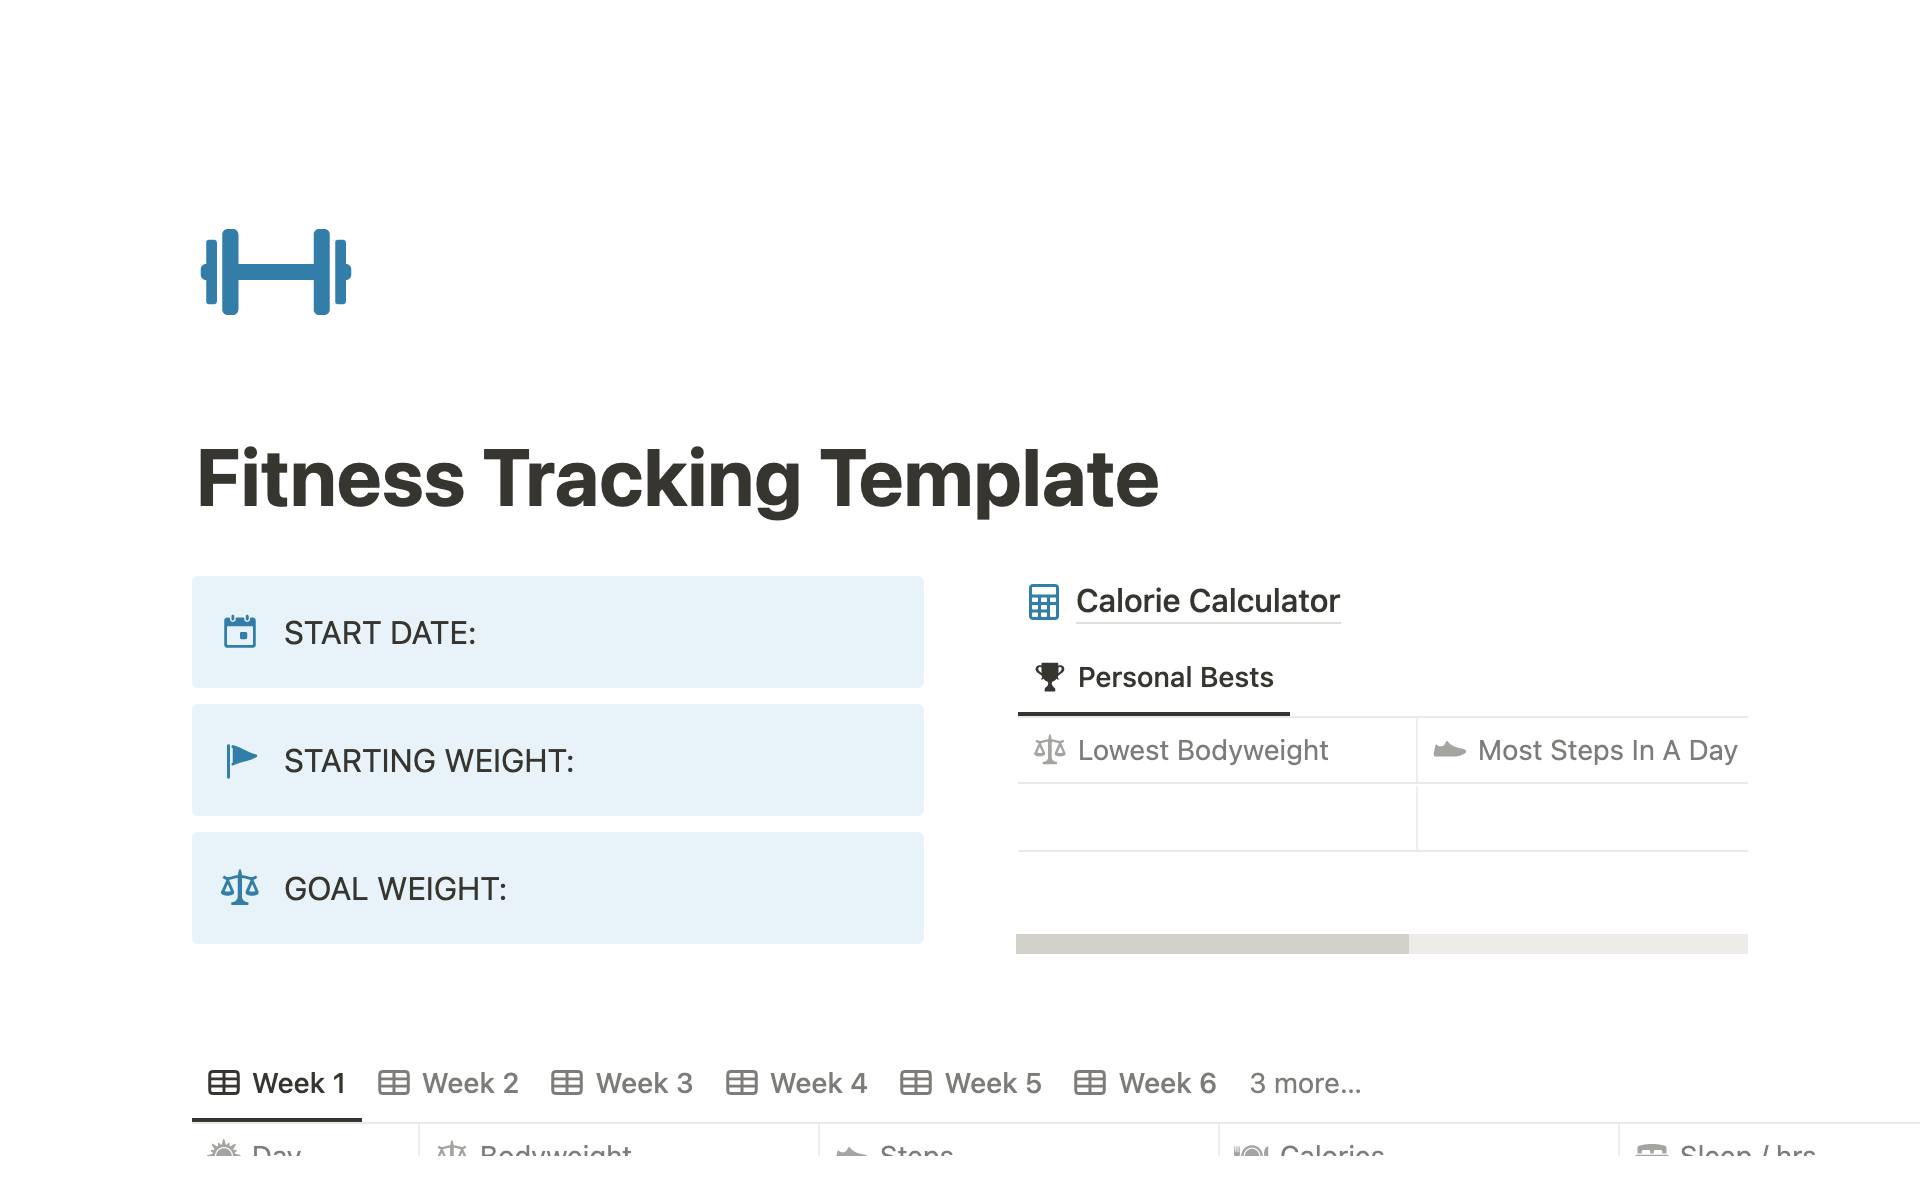 Vista previa de una plantilla para Fitness Tracking Template